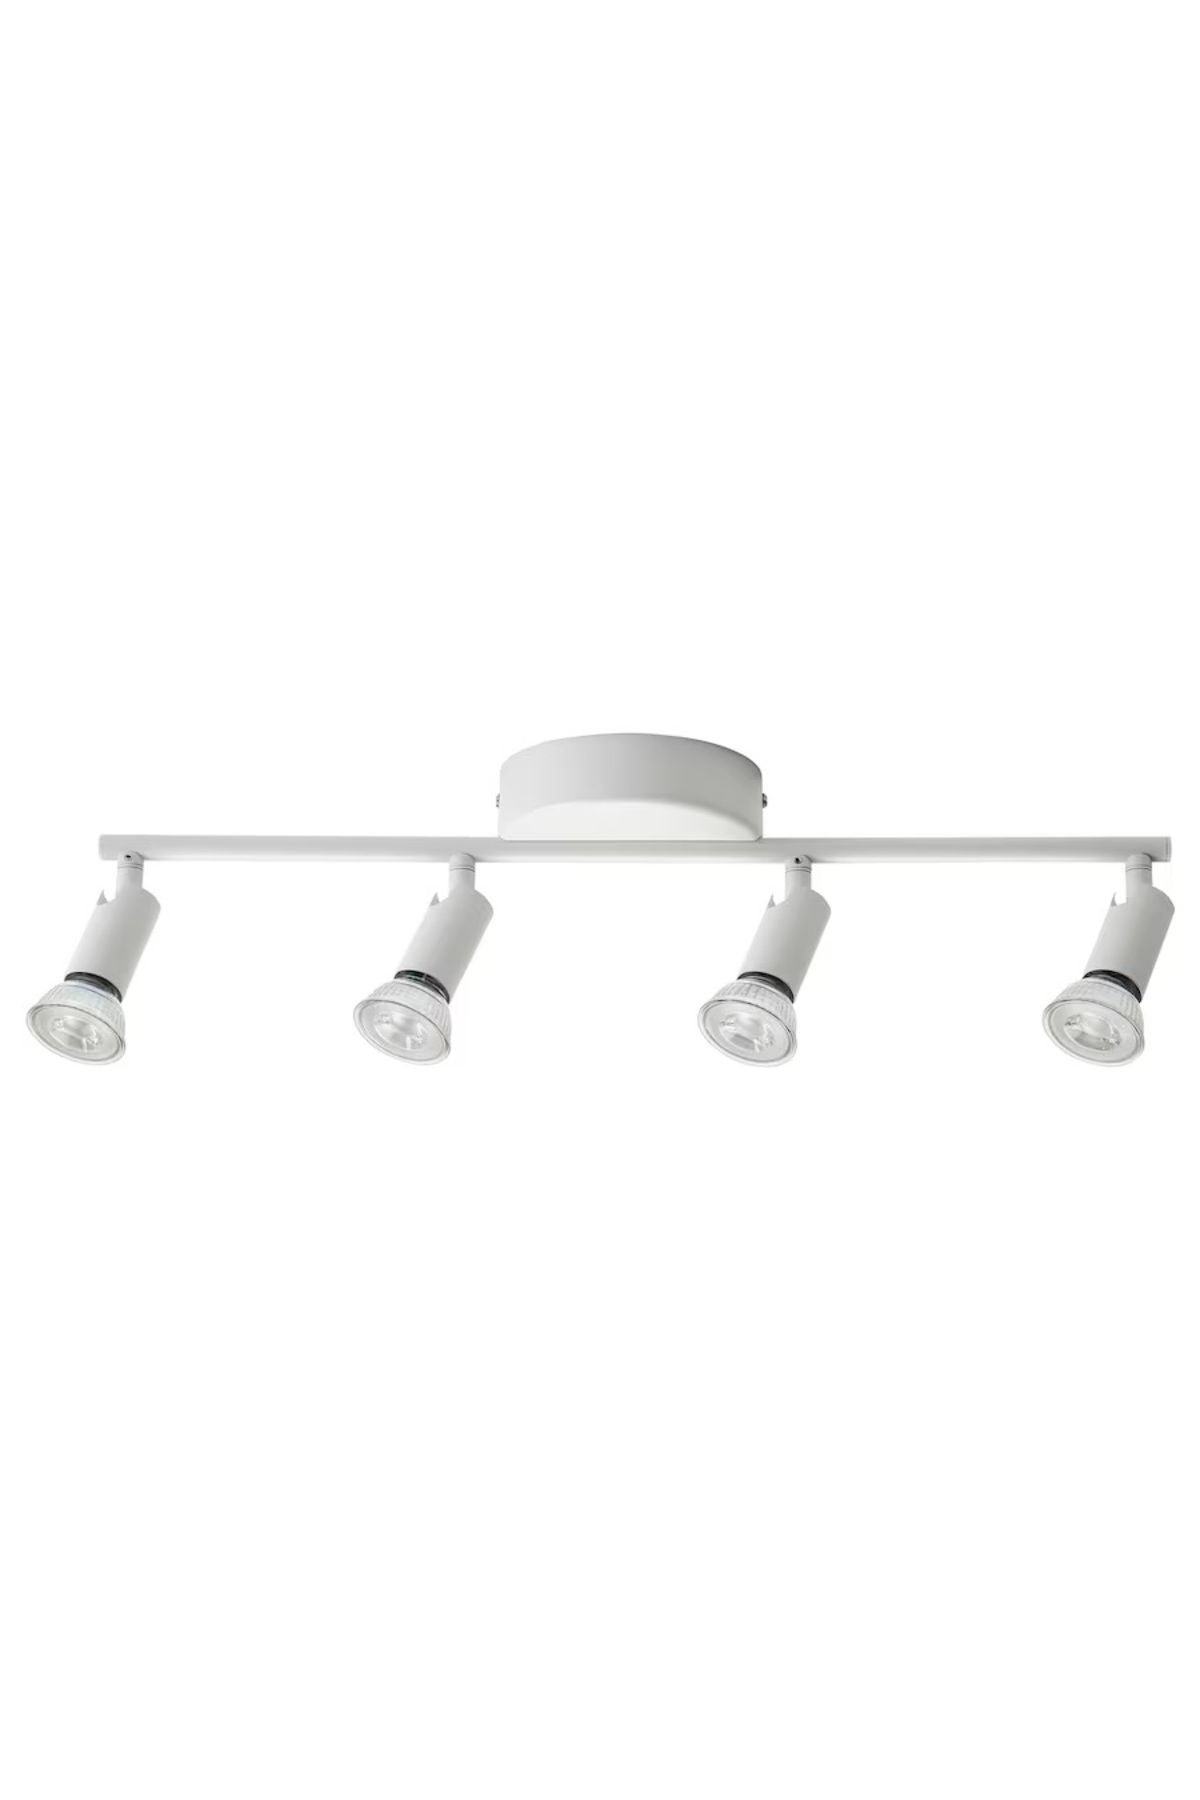 IKEA KRUSNATE 4 lü Ayarlanabilir Çelik Spot Lamba Beyaz 13x9x52 cm 4 Spotlu Tavan Lambası